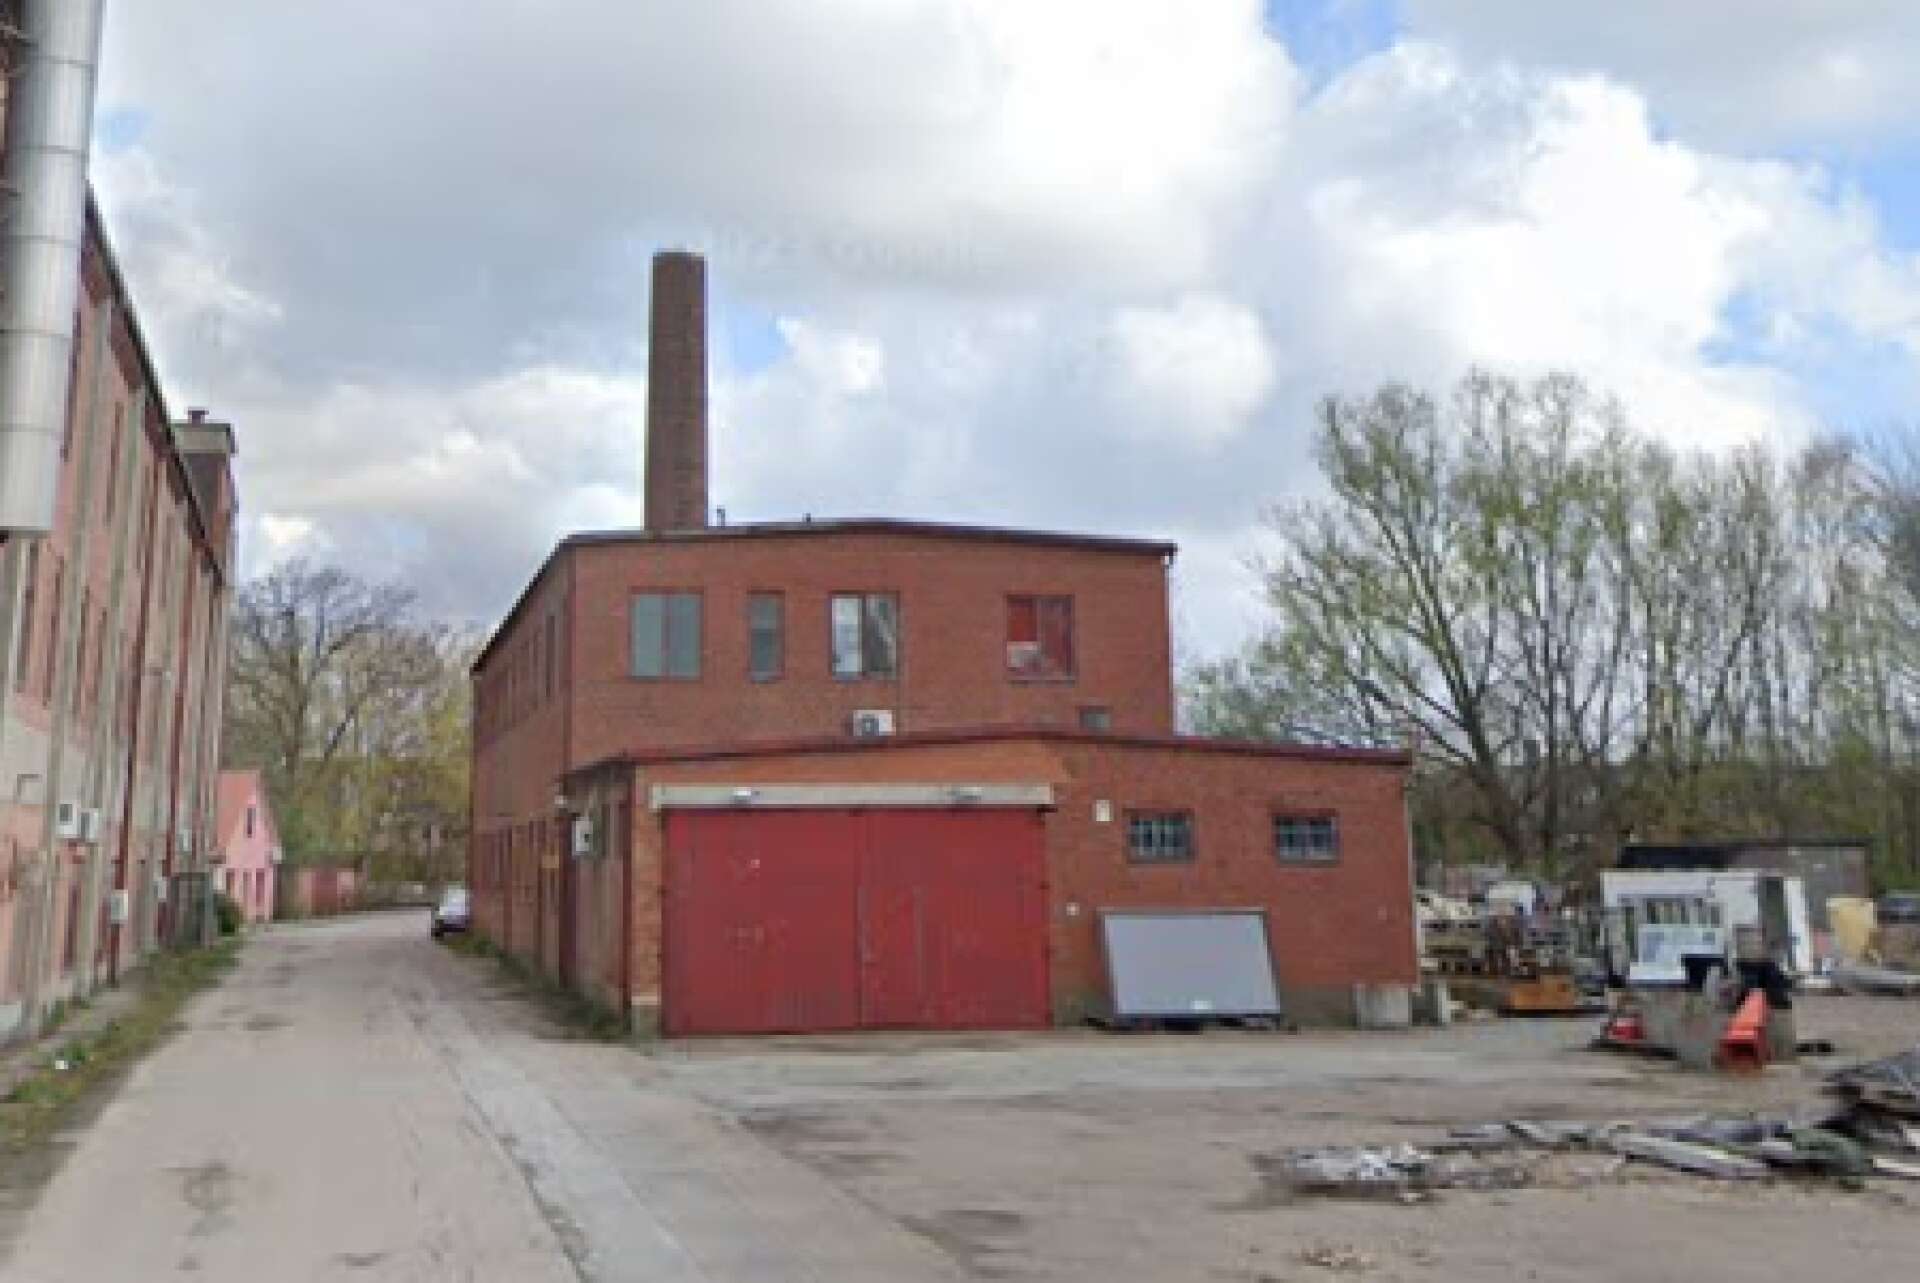 Comanches första fest i Sverige hölls i en panncentral vid den gamla yllefabriken i skånska Marieholm. Polisen fanns på plats för att kontrollera besökarna. 